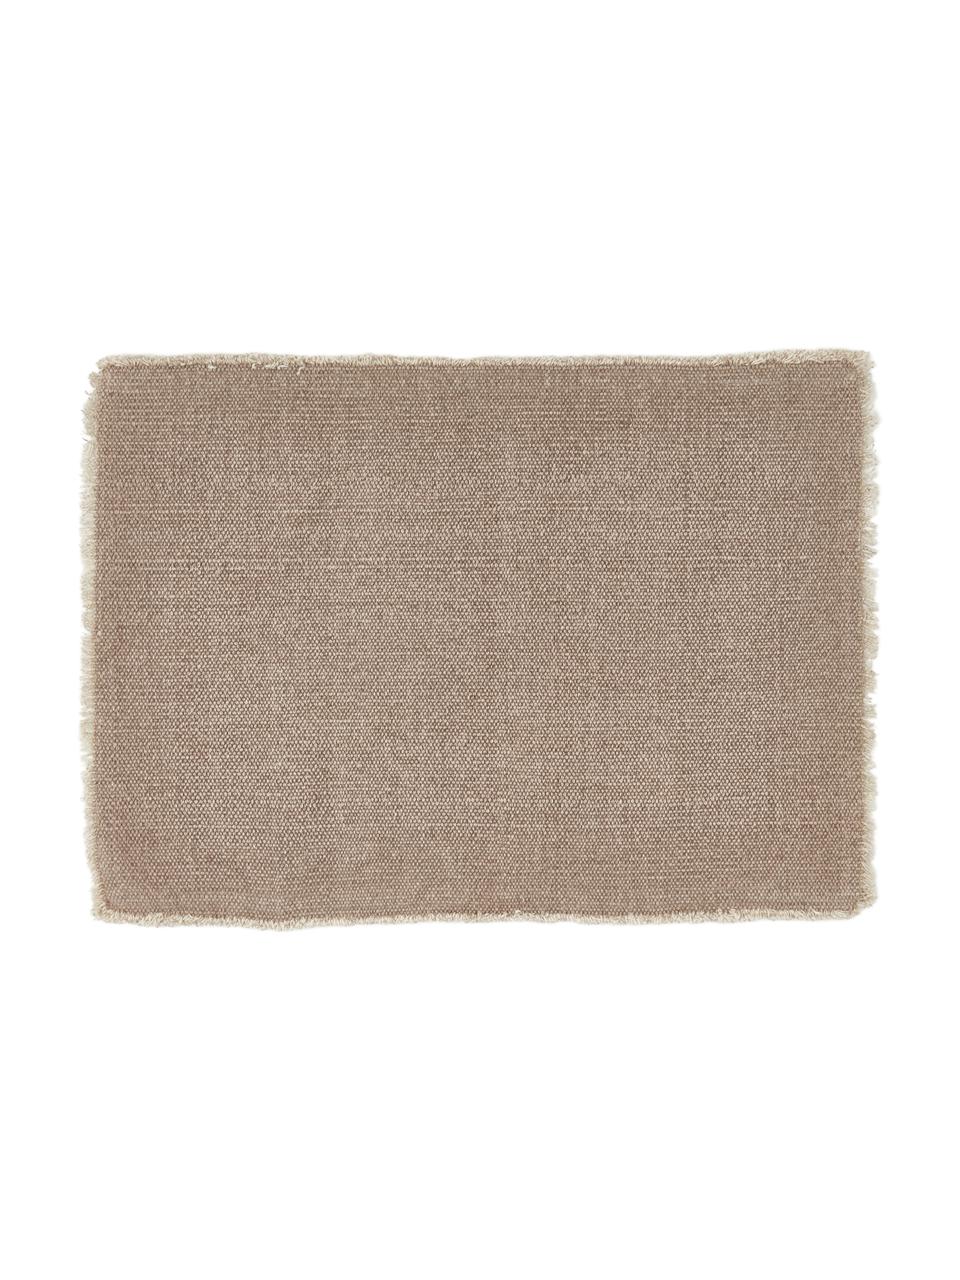 Baumwoll-Tischsets Edge in Beige, 6 Stück, 85% Baumwolle, 15% gemischte Fasern, Beige, 35 x 48 cm